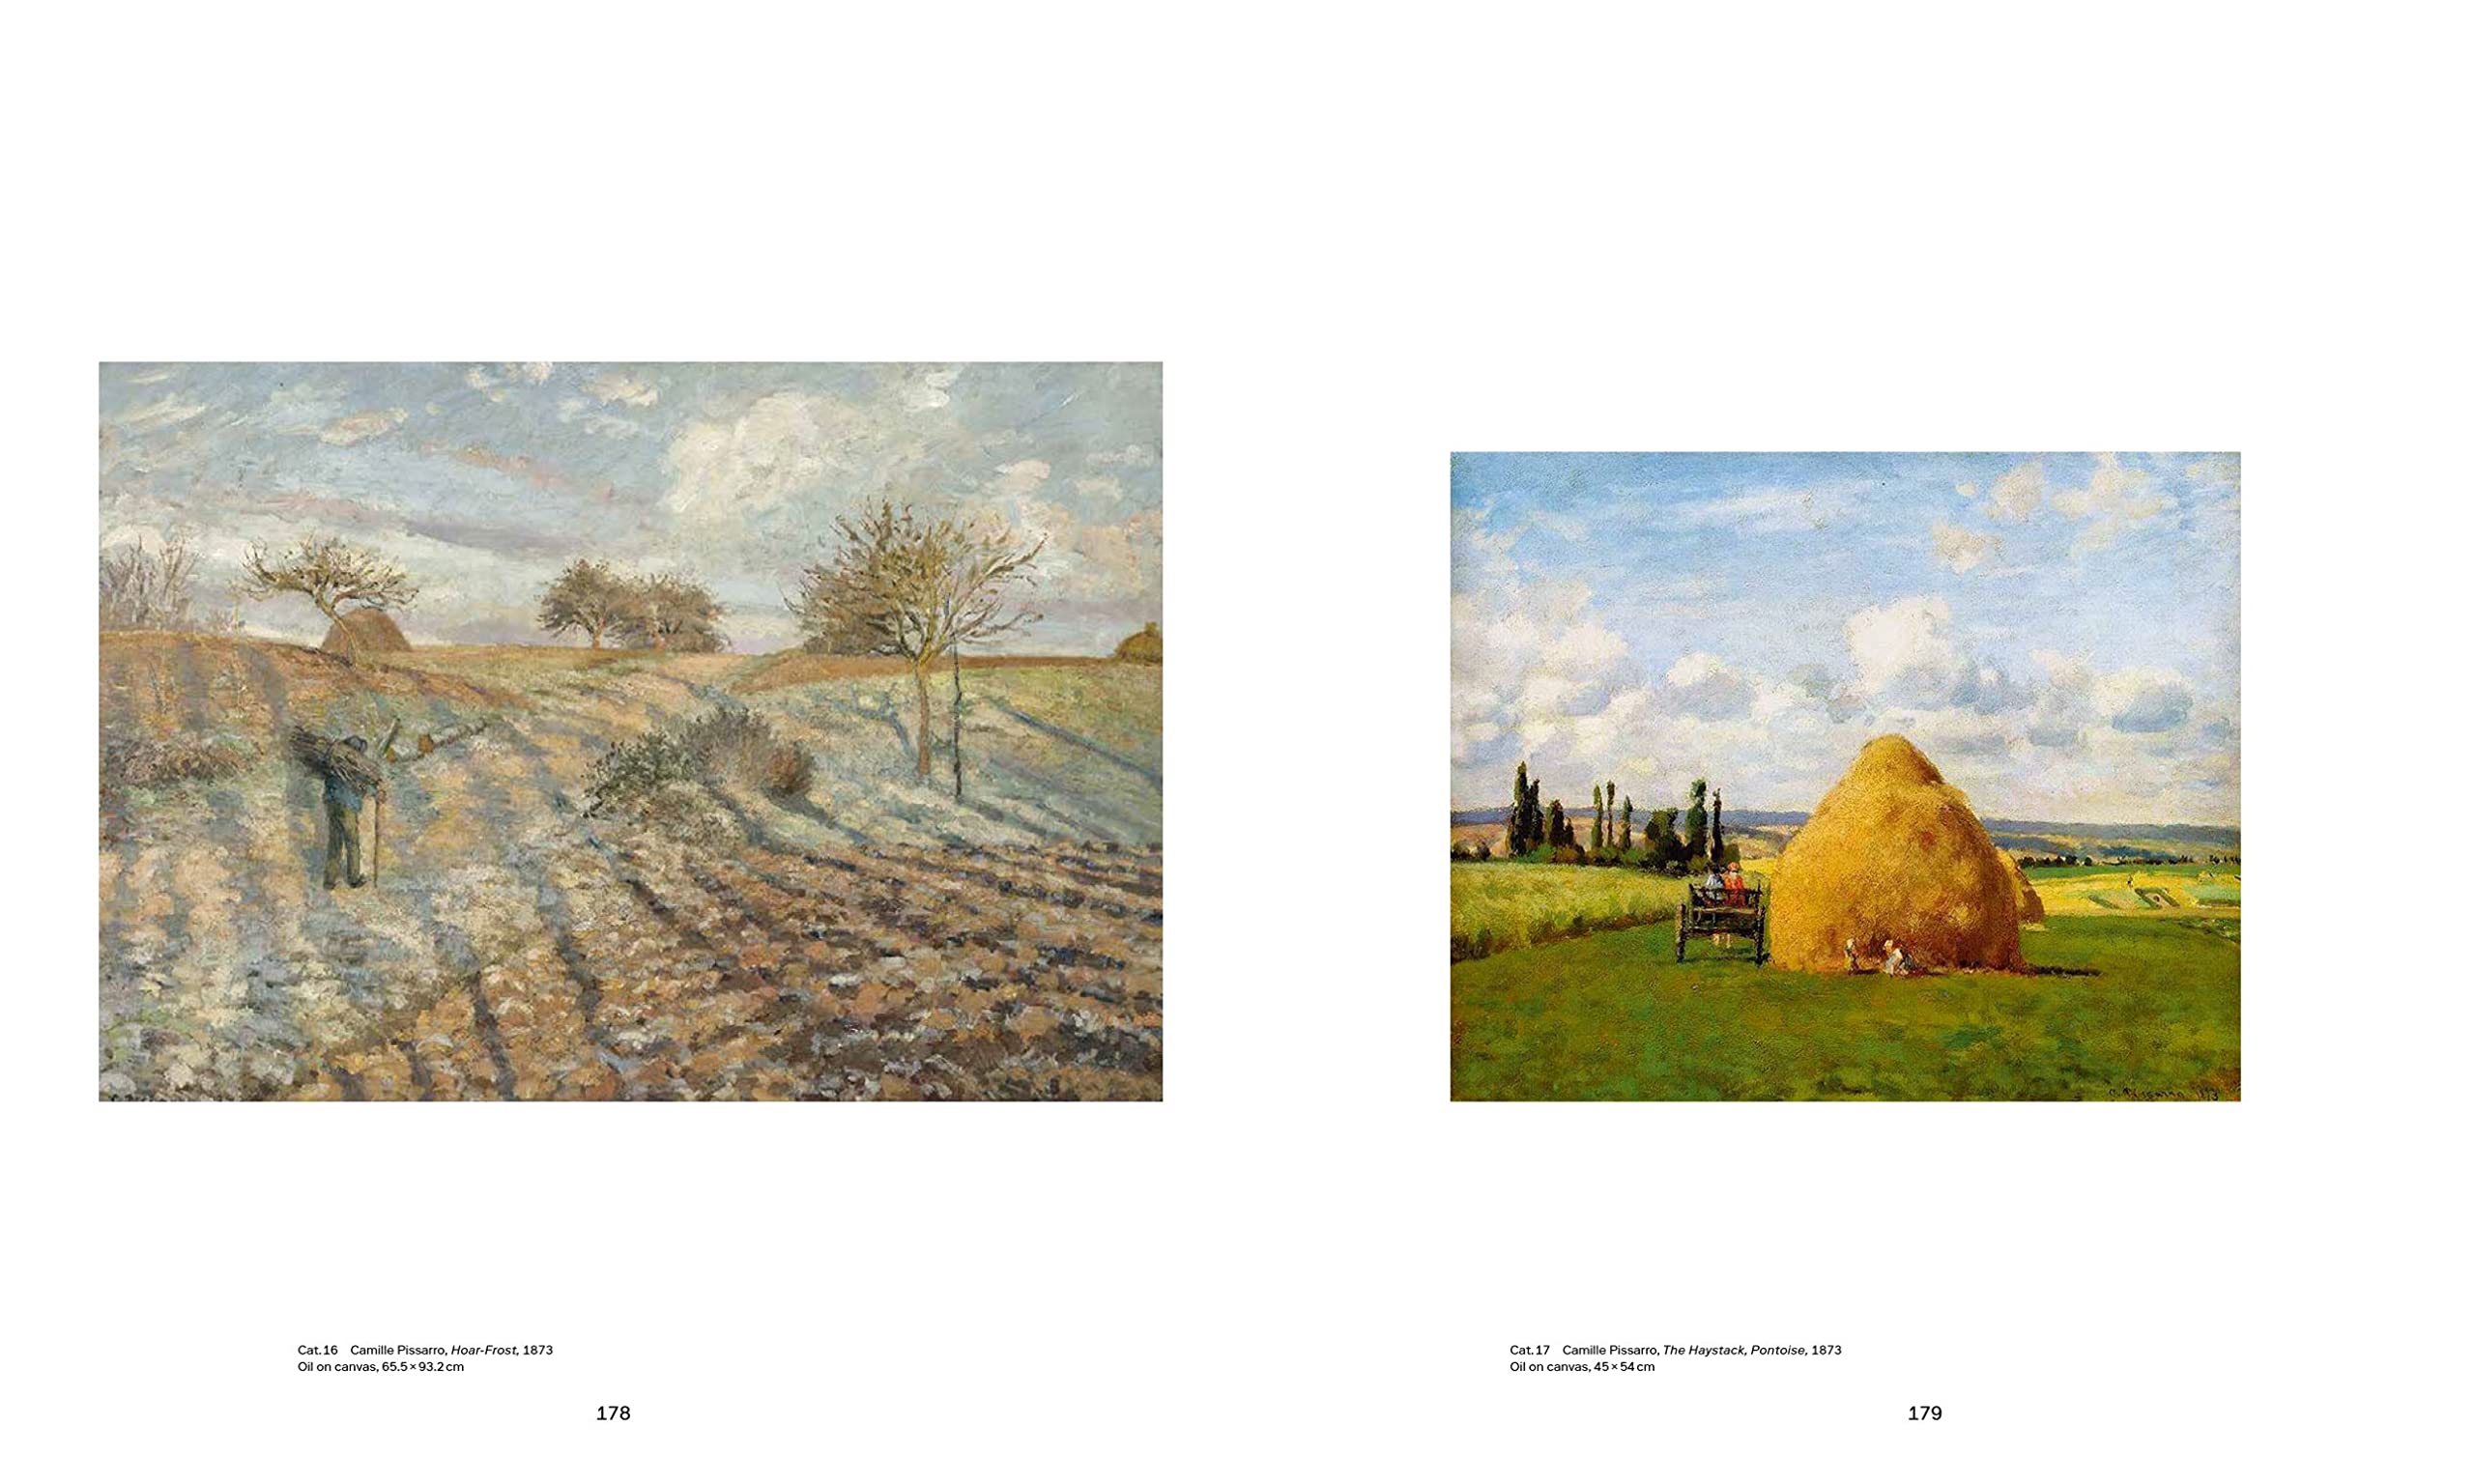 Camille Pissarro: The Studio of Modernism | Christophe Duvivier, Josef Helfenstein